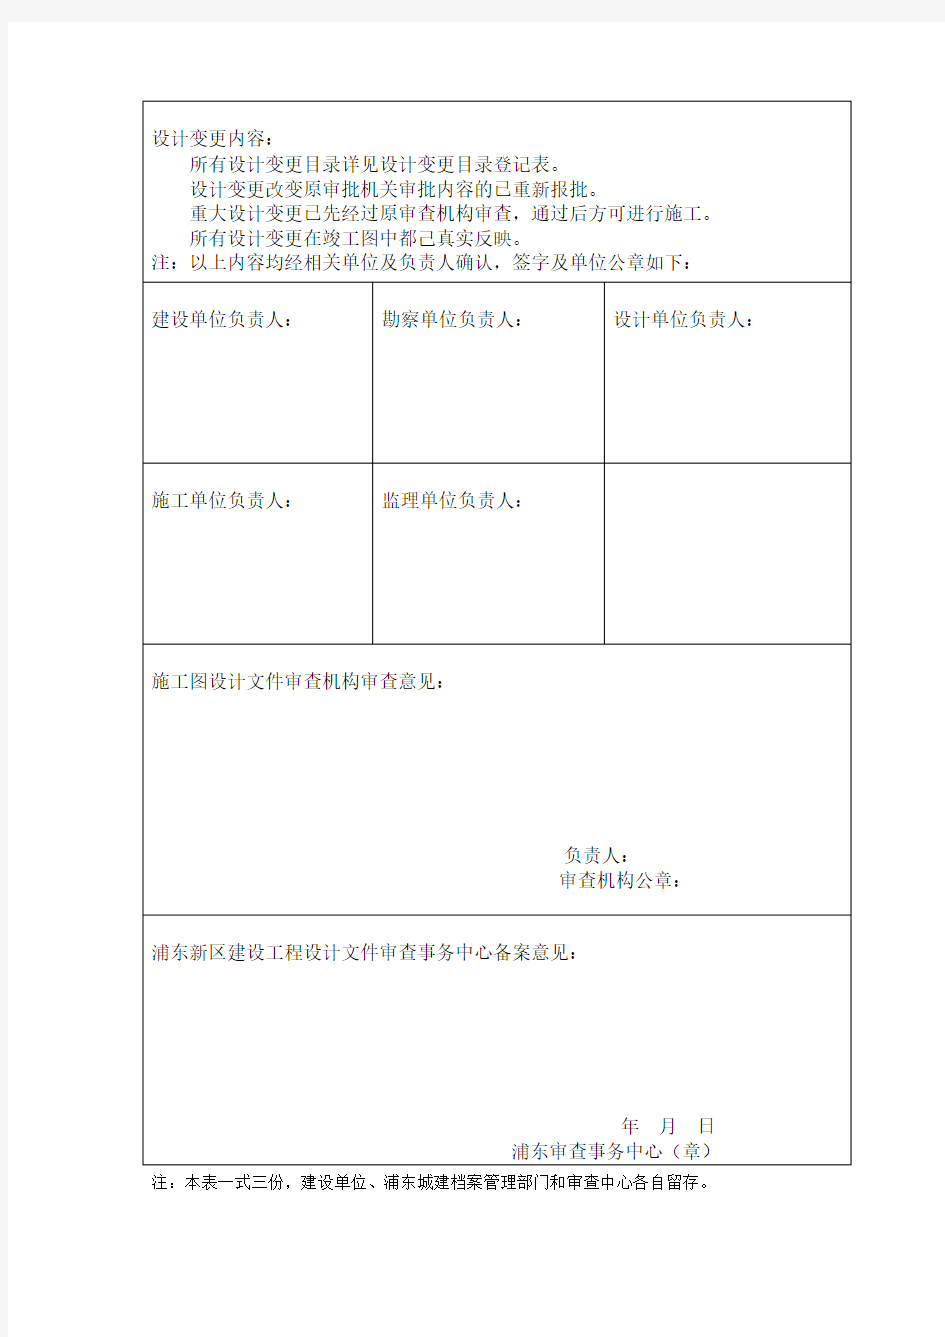 上海市浦东新区建设工程设计变更审查意见备案表